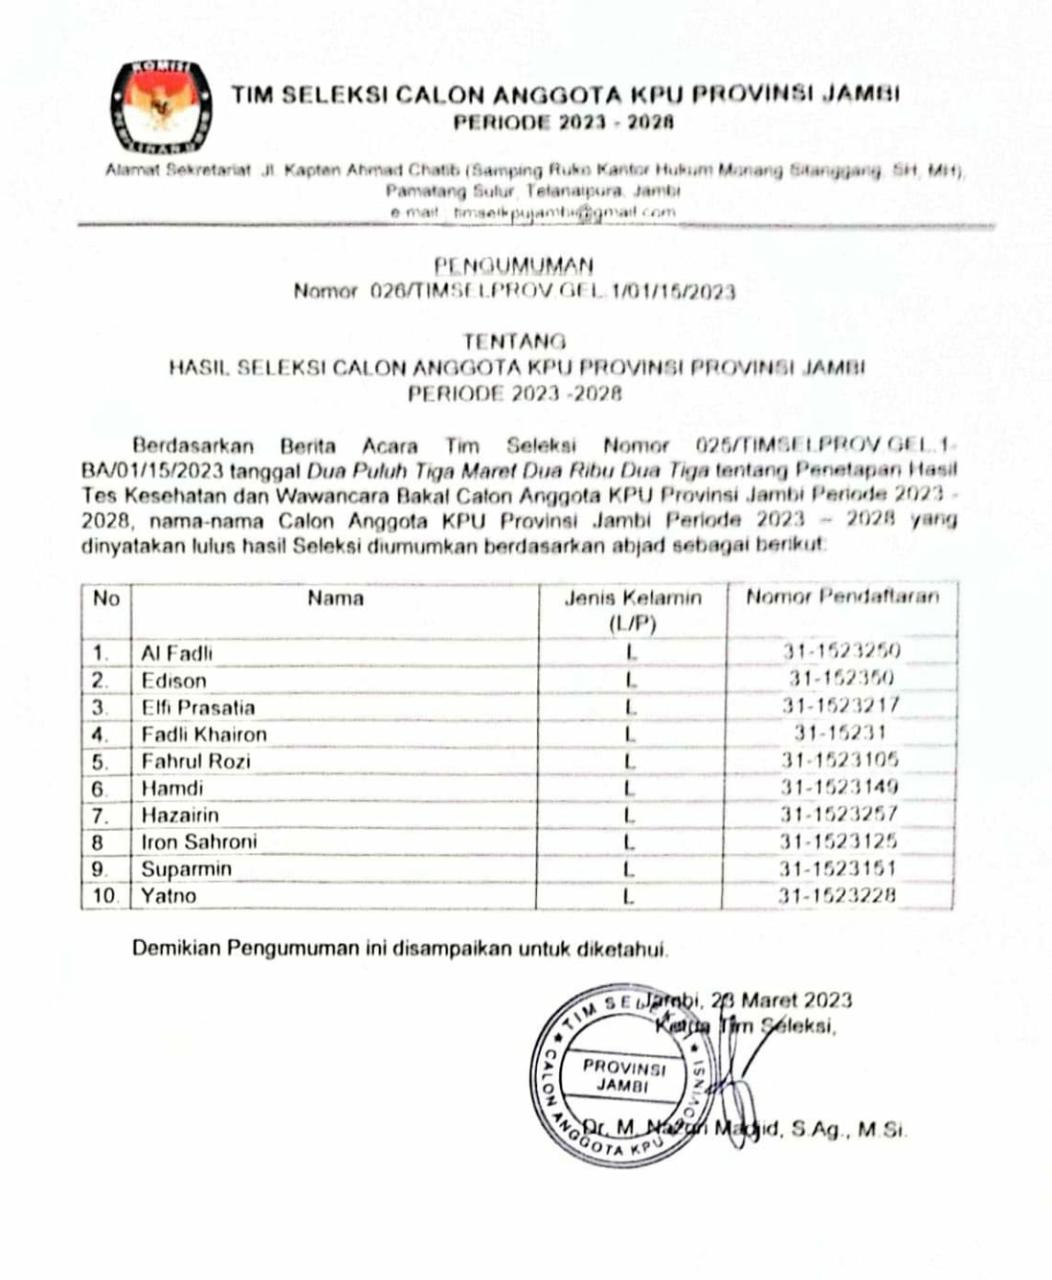 BREAKING NEWS: Timsel Umumkan 10 Besar Calon Anggota KPU Provinsi Jambi